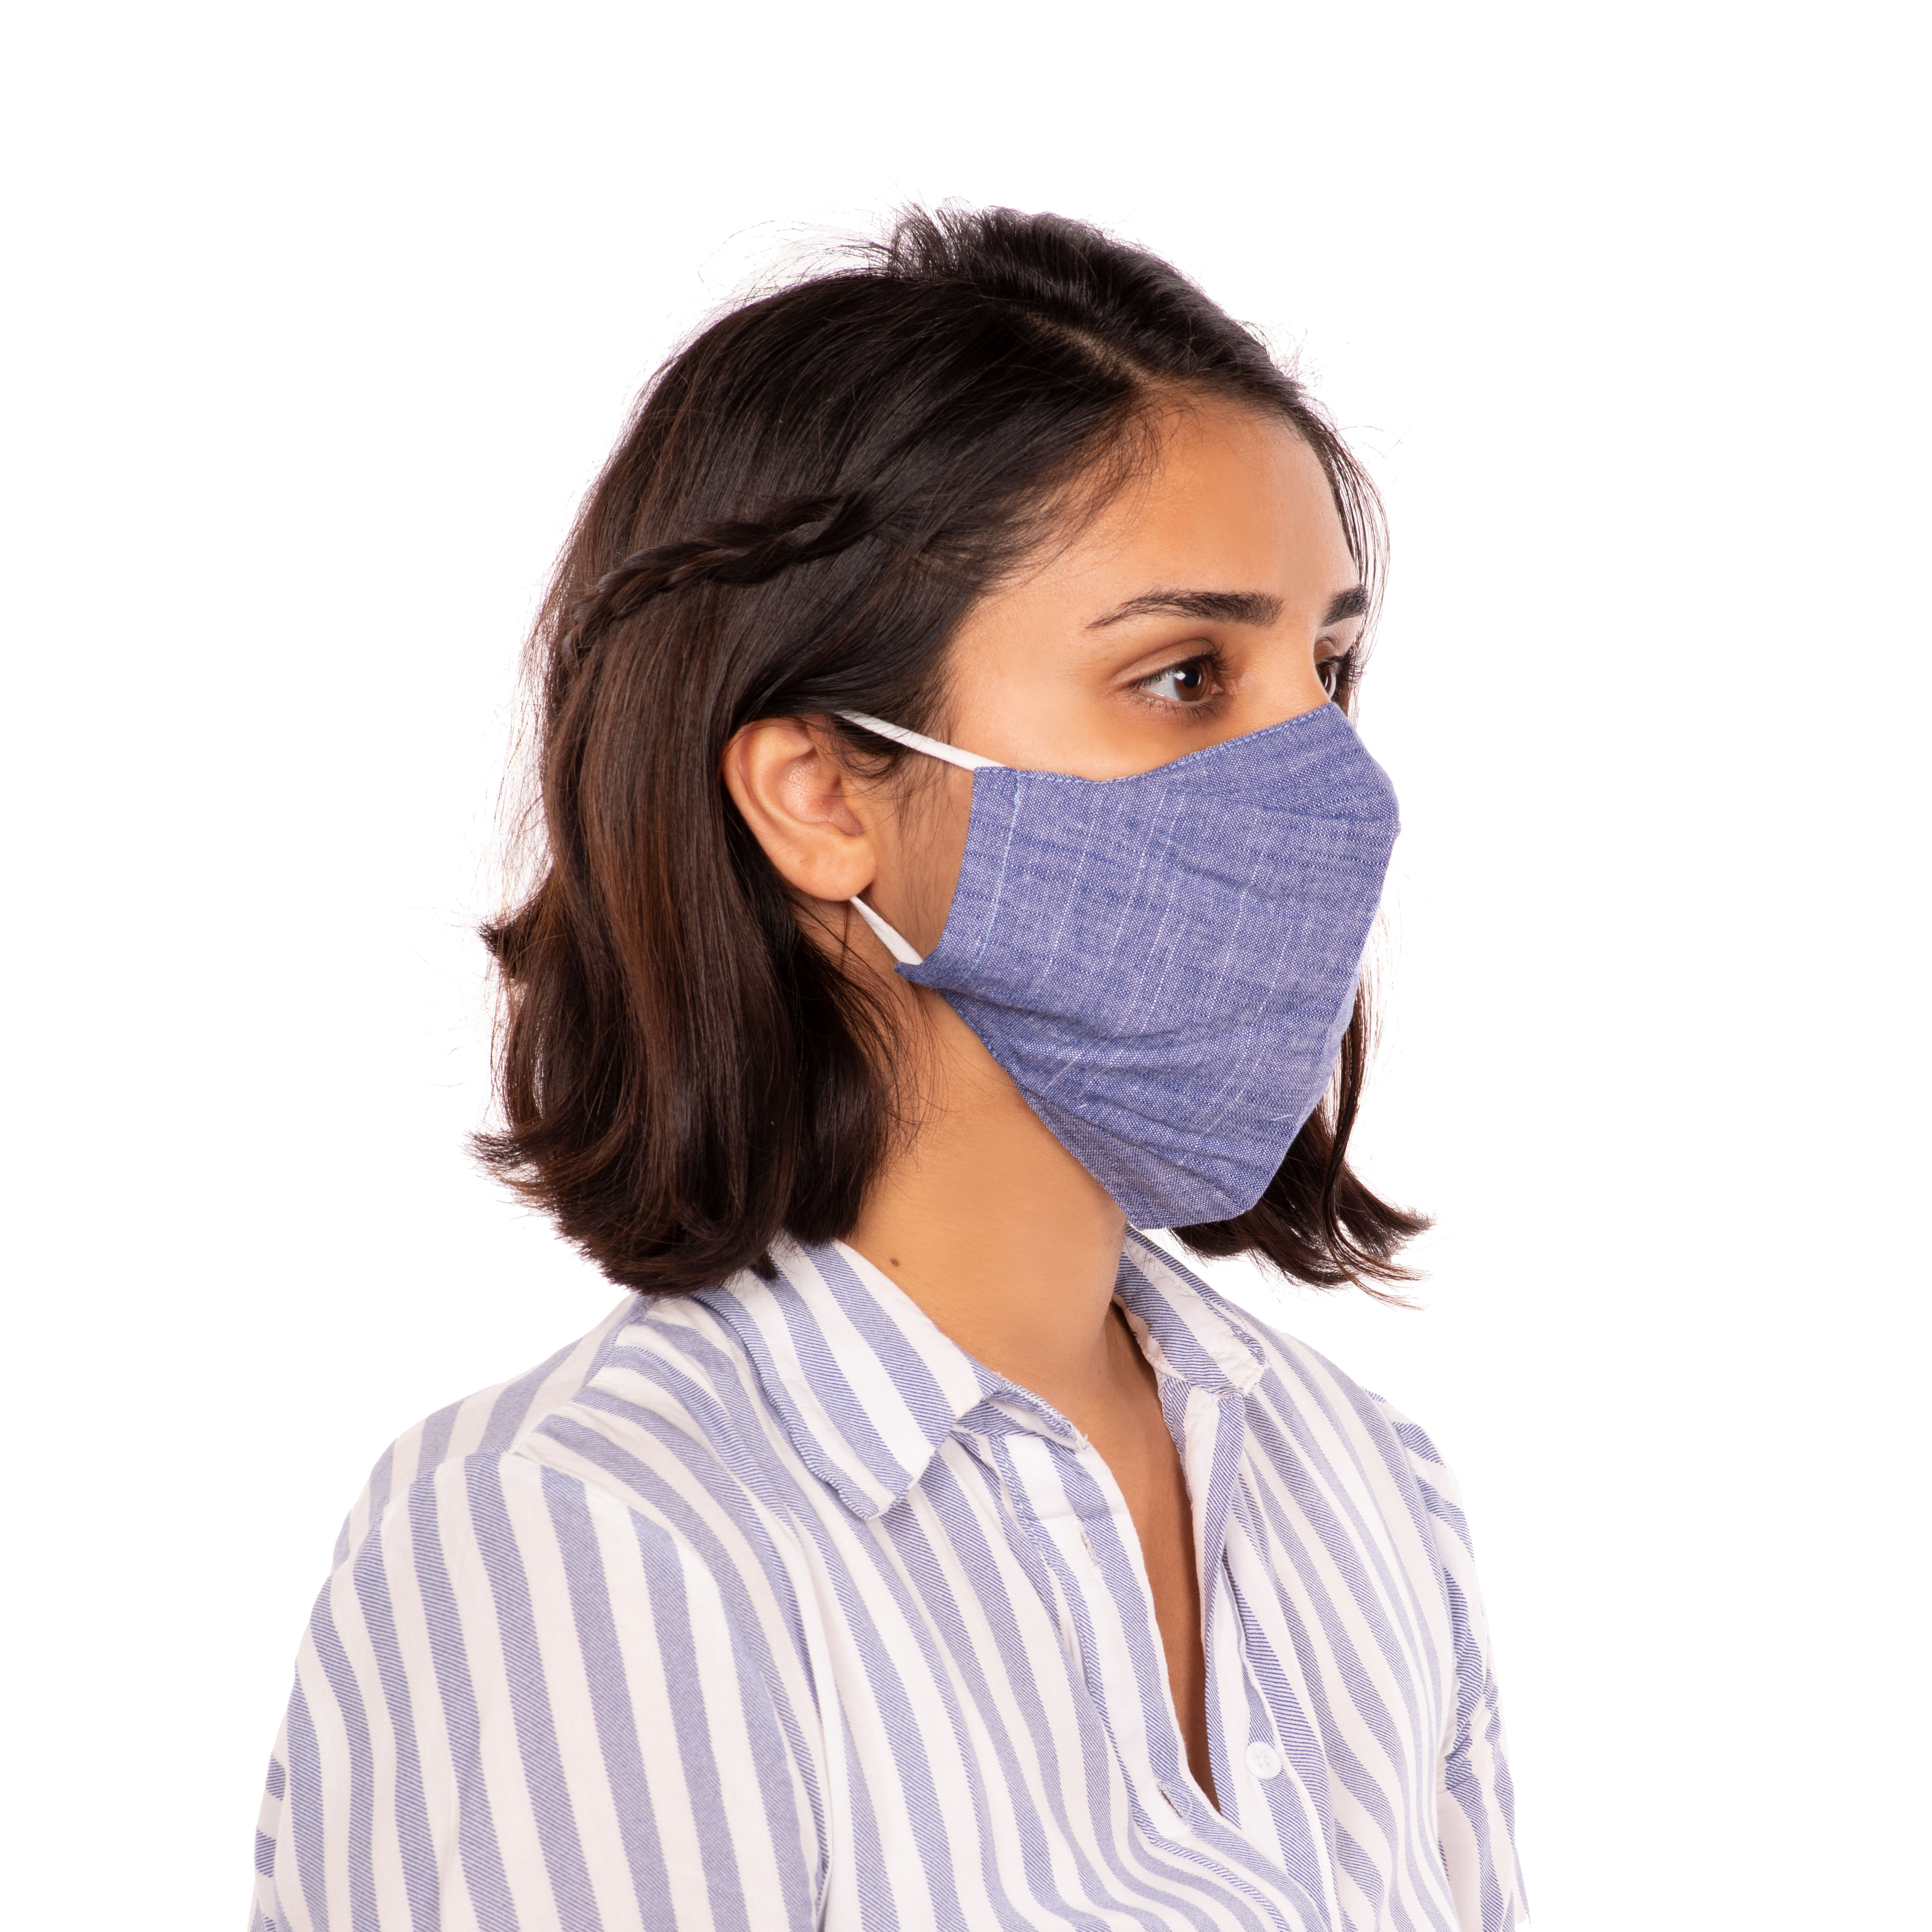 Masque antibactériel et réutilisable, navy blue